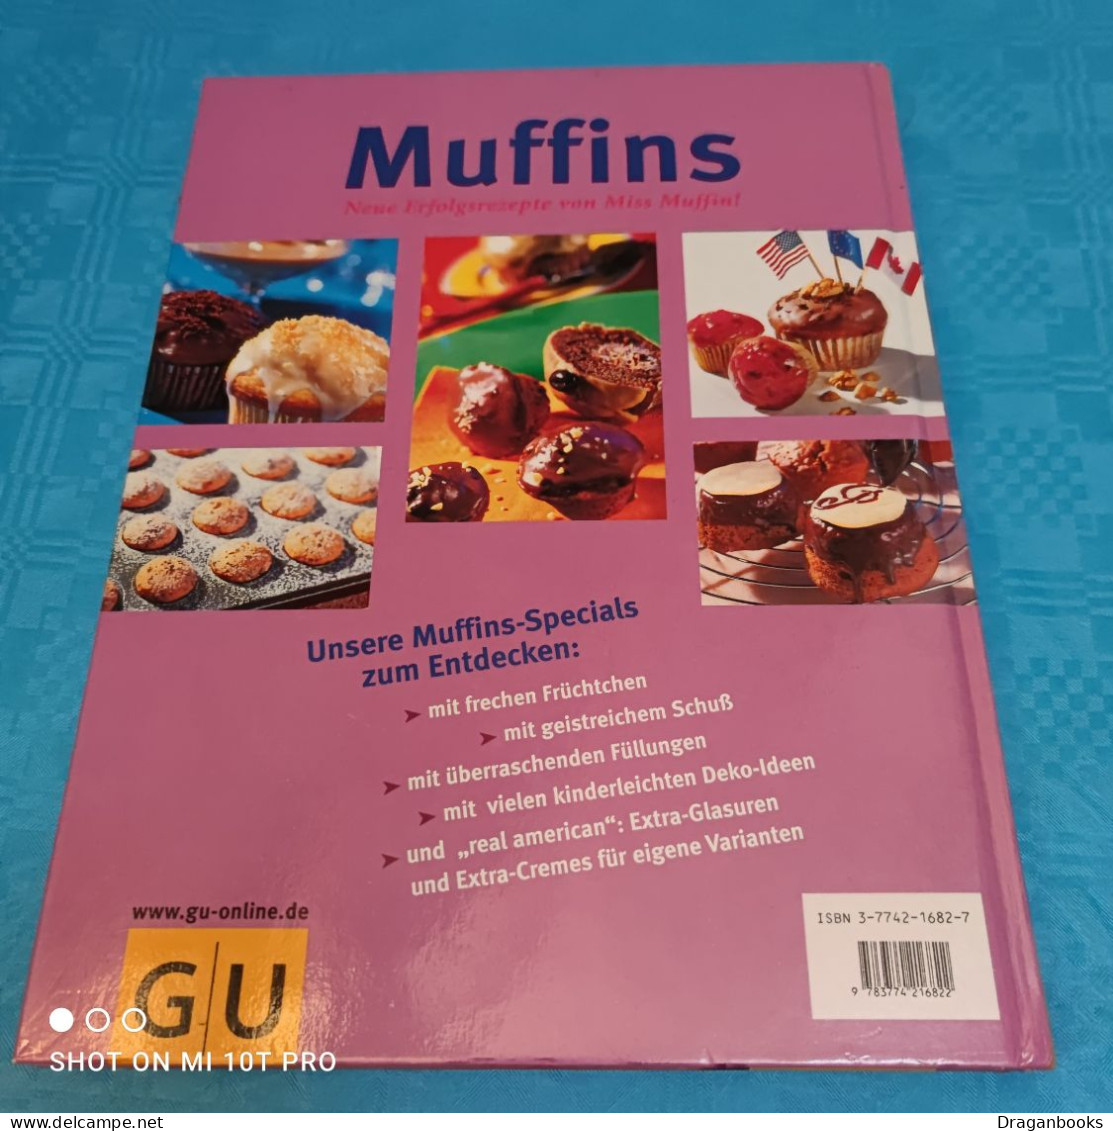 Jutta Renz - Muffins - Eten & Drinken